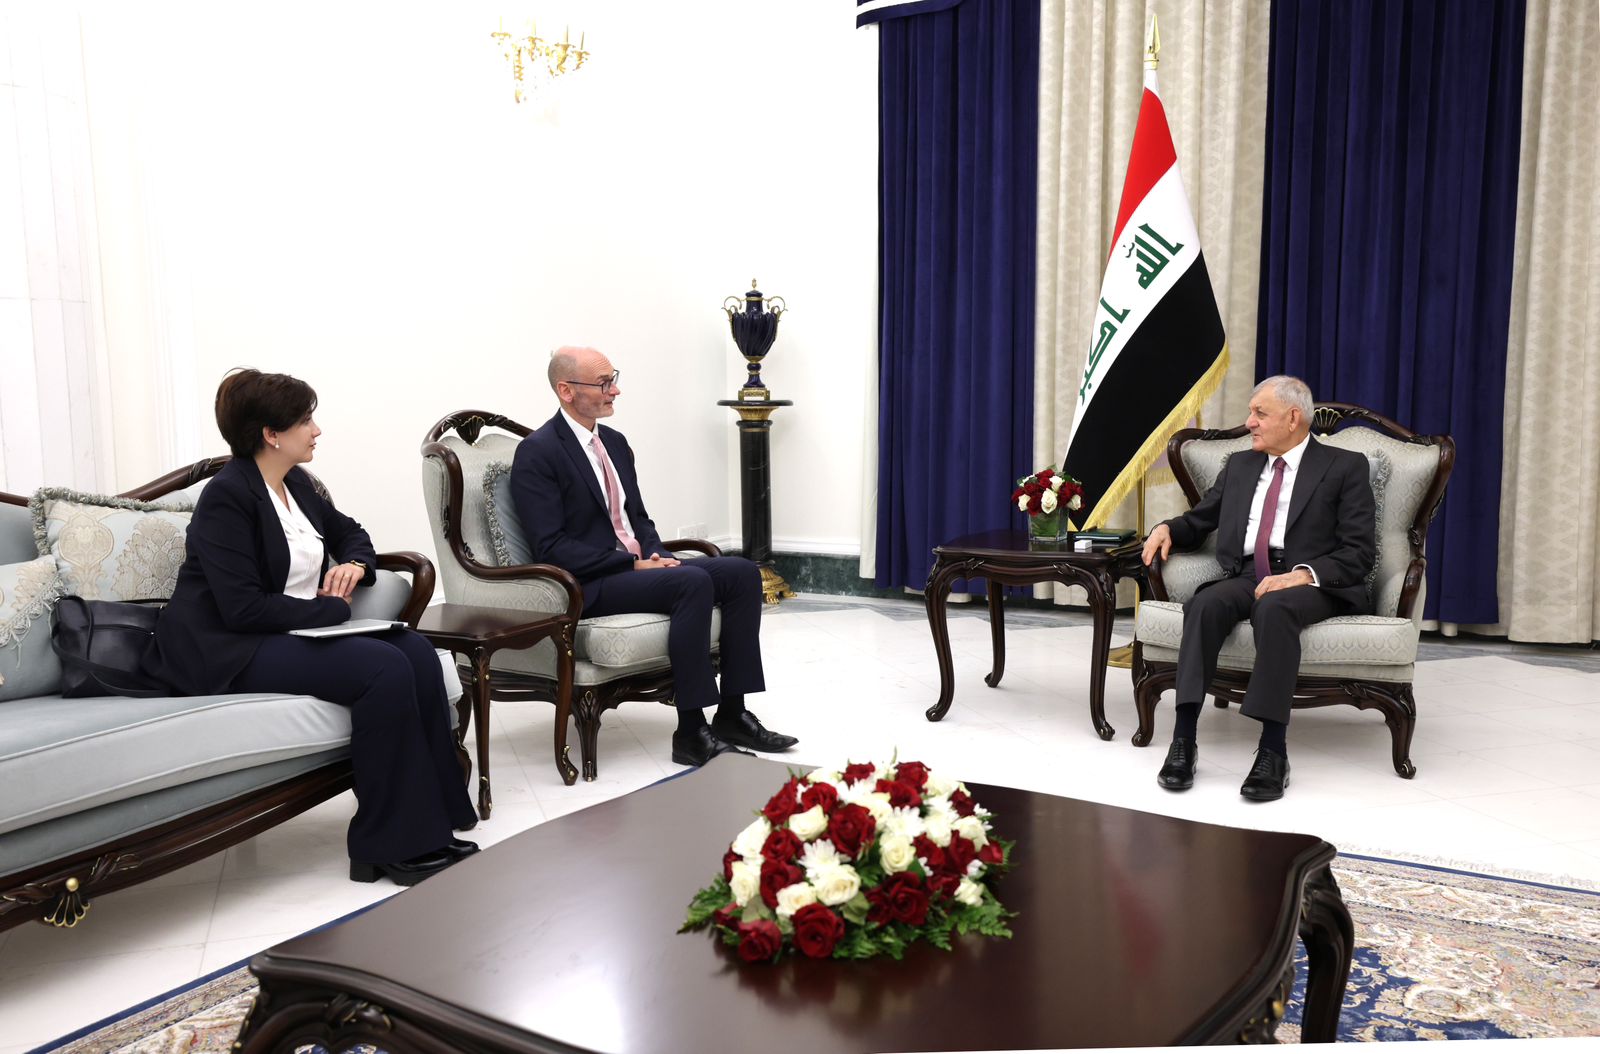 الرئيس العراقي يخبر السفير البريطاني بآخر مستجدات الموقوفين في السجون